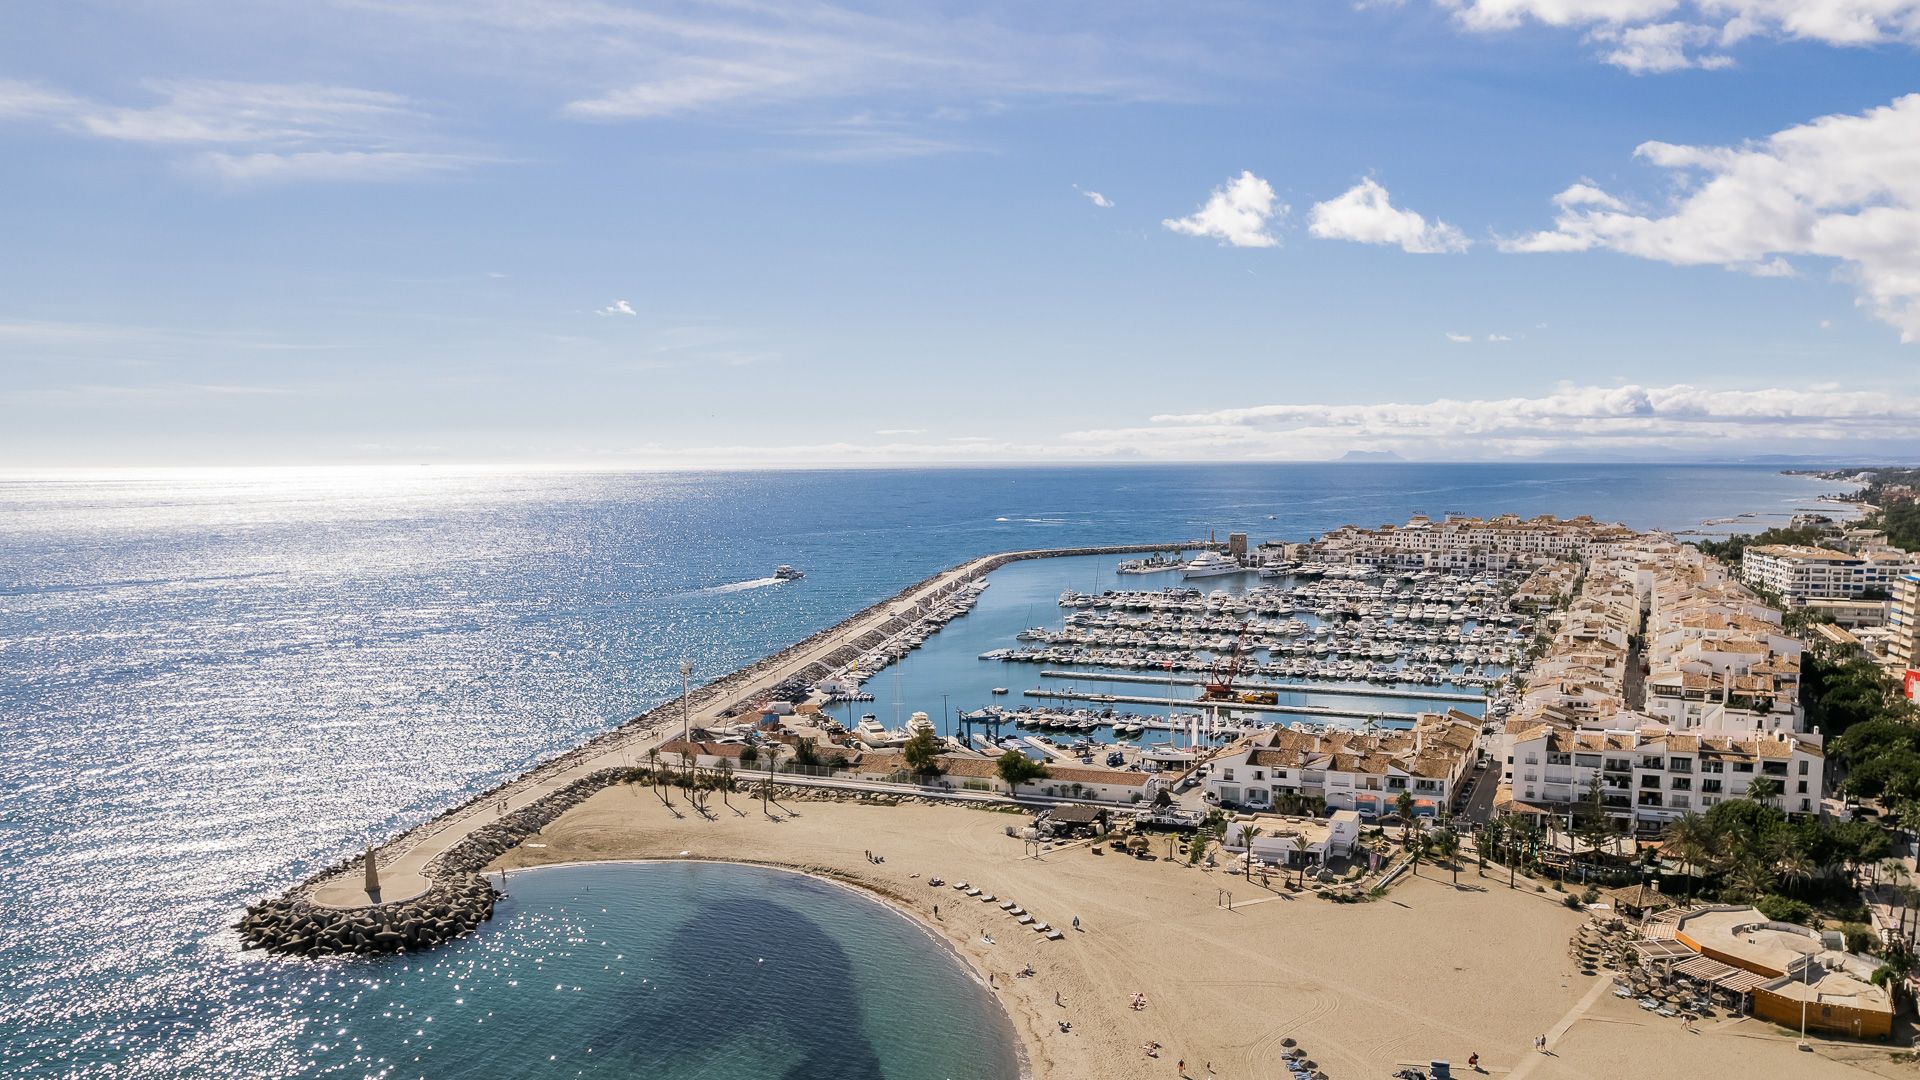 Sea views in Puerto Banus, Marbella